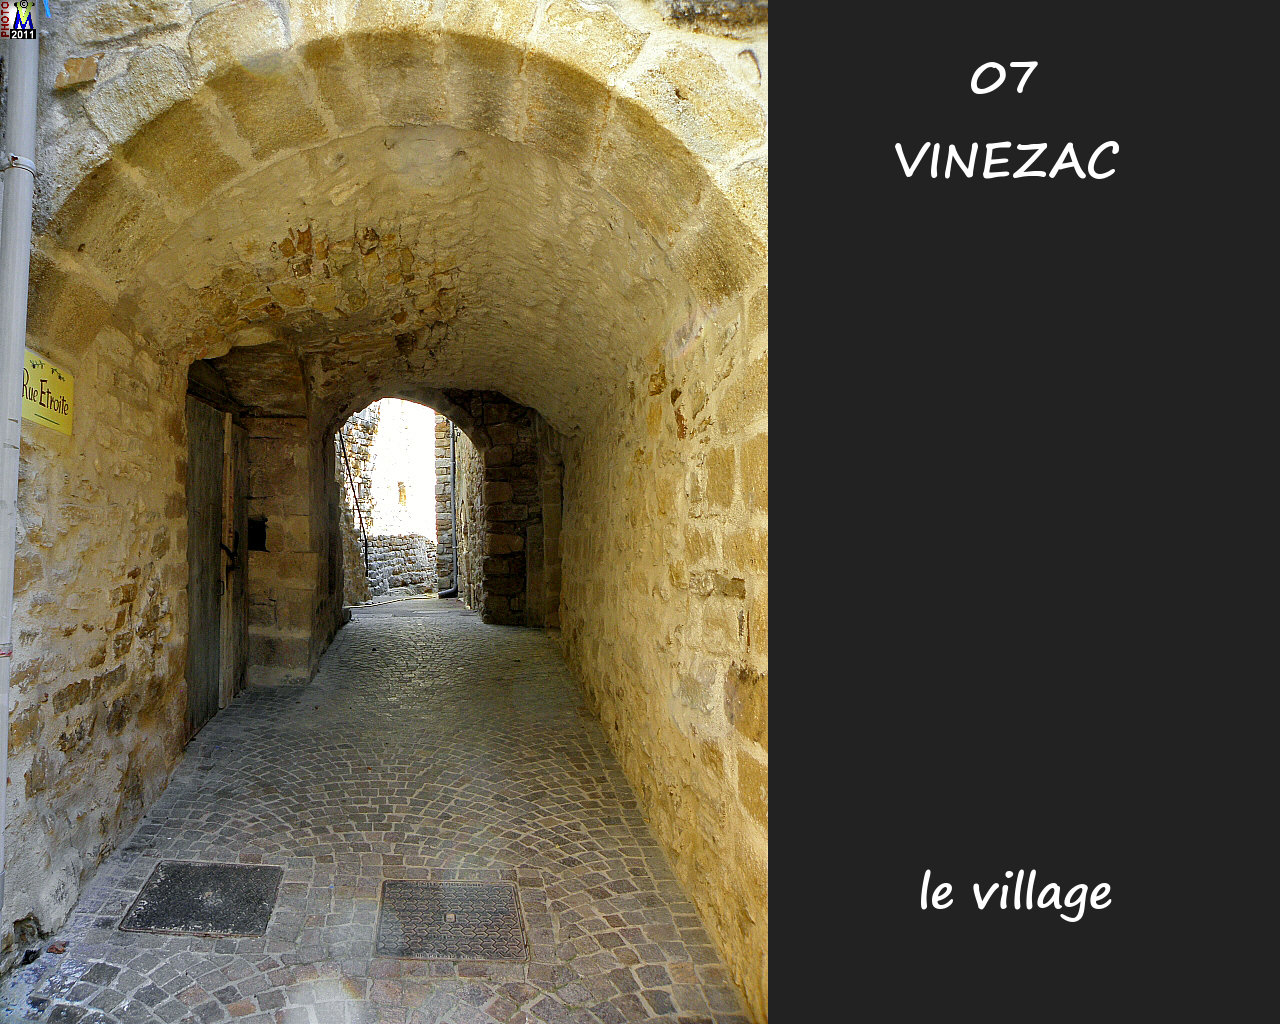 07VINEZAC_village_152.jpg